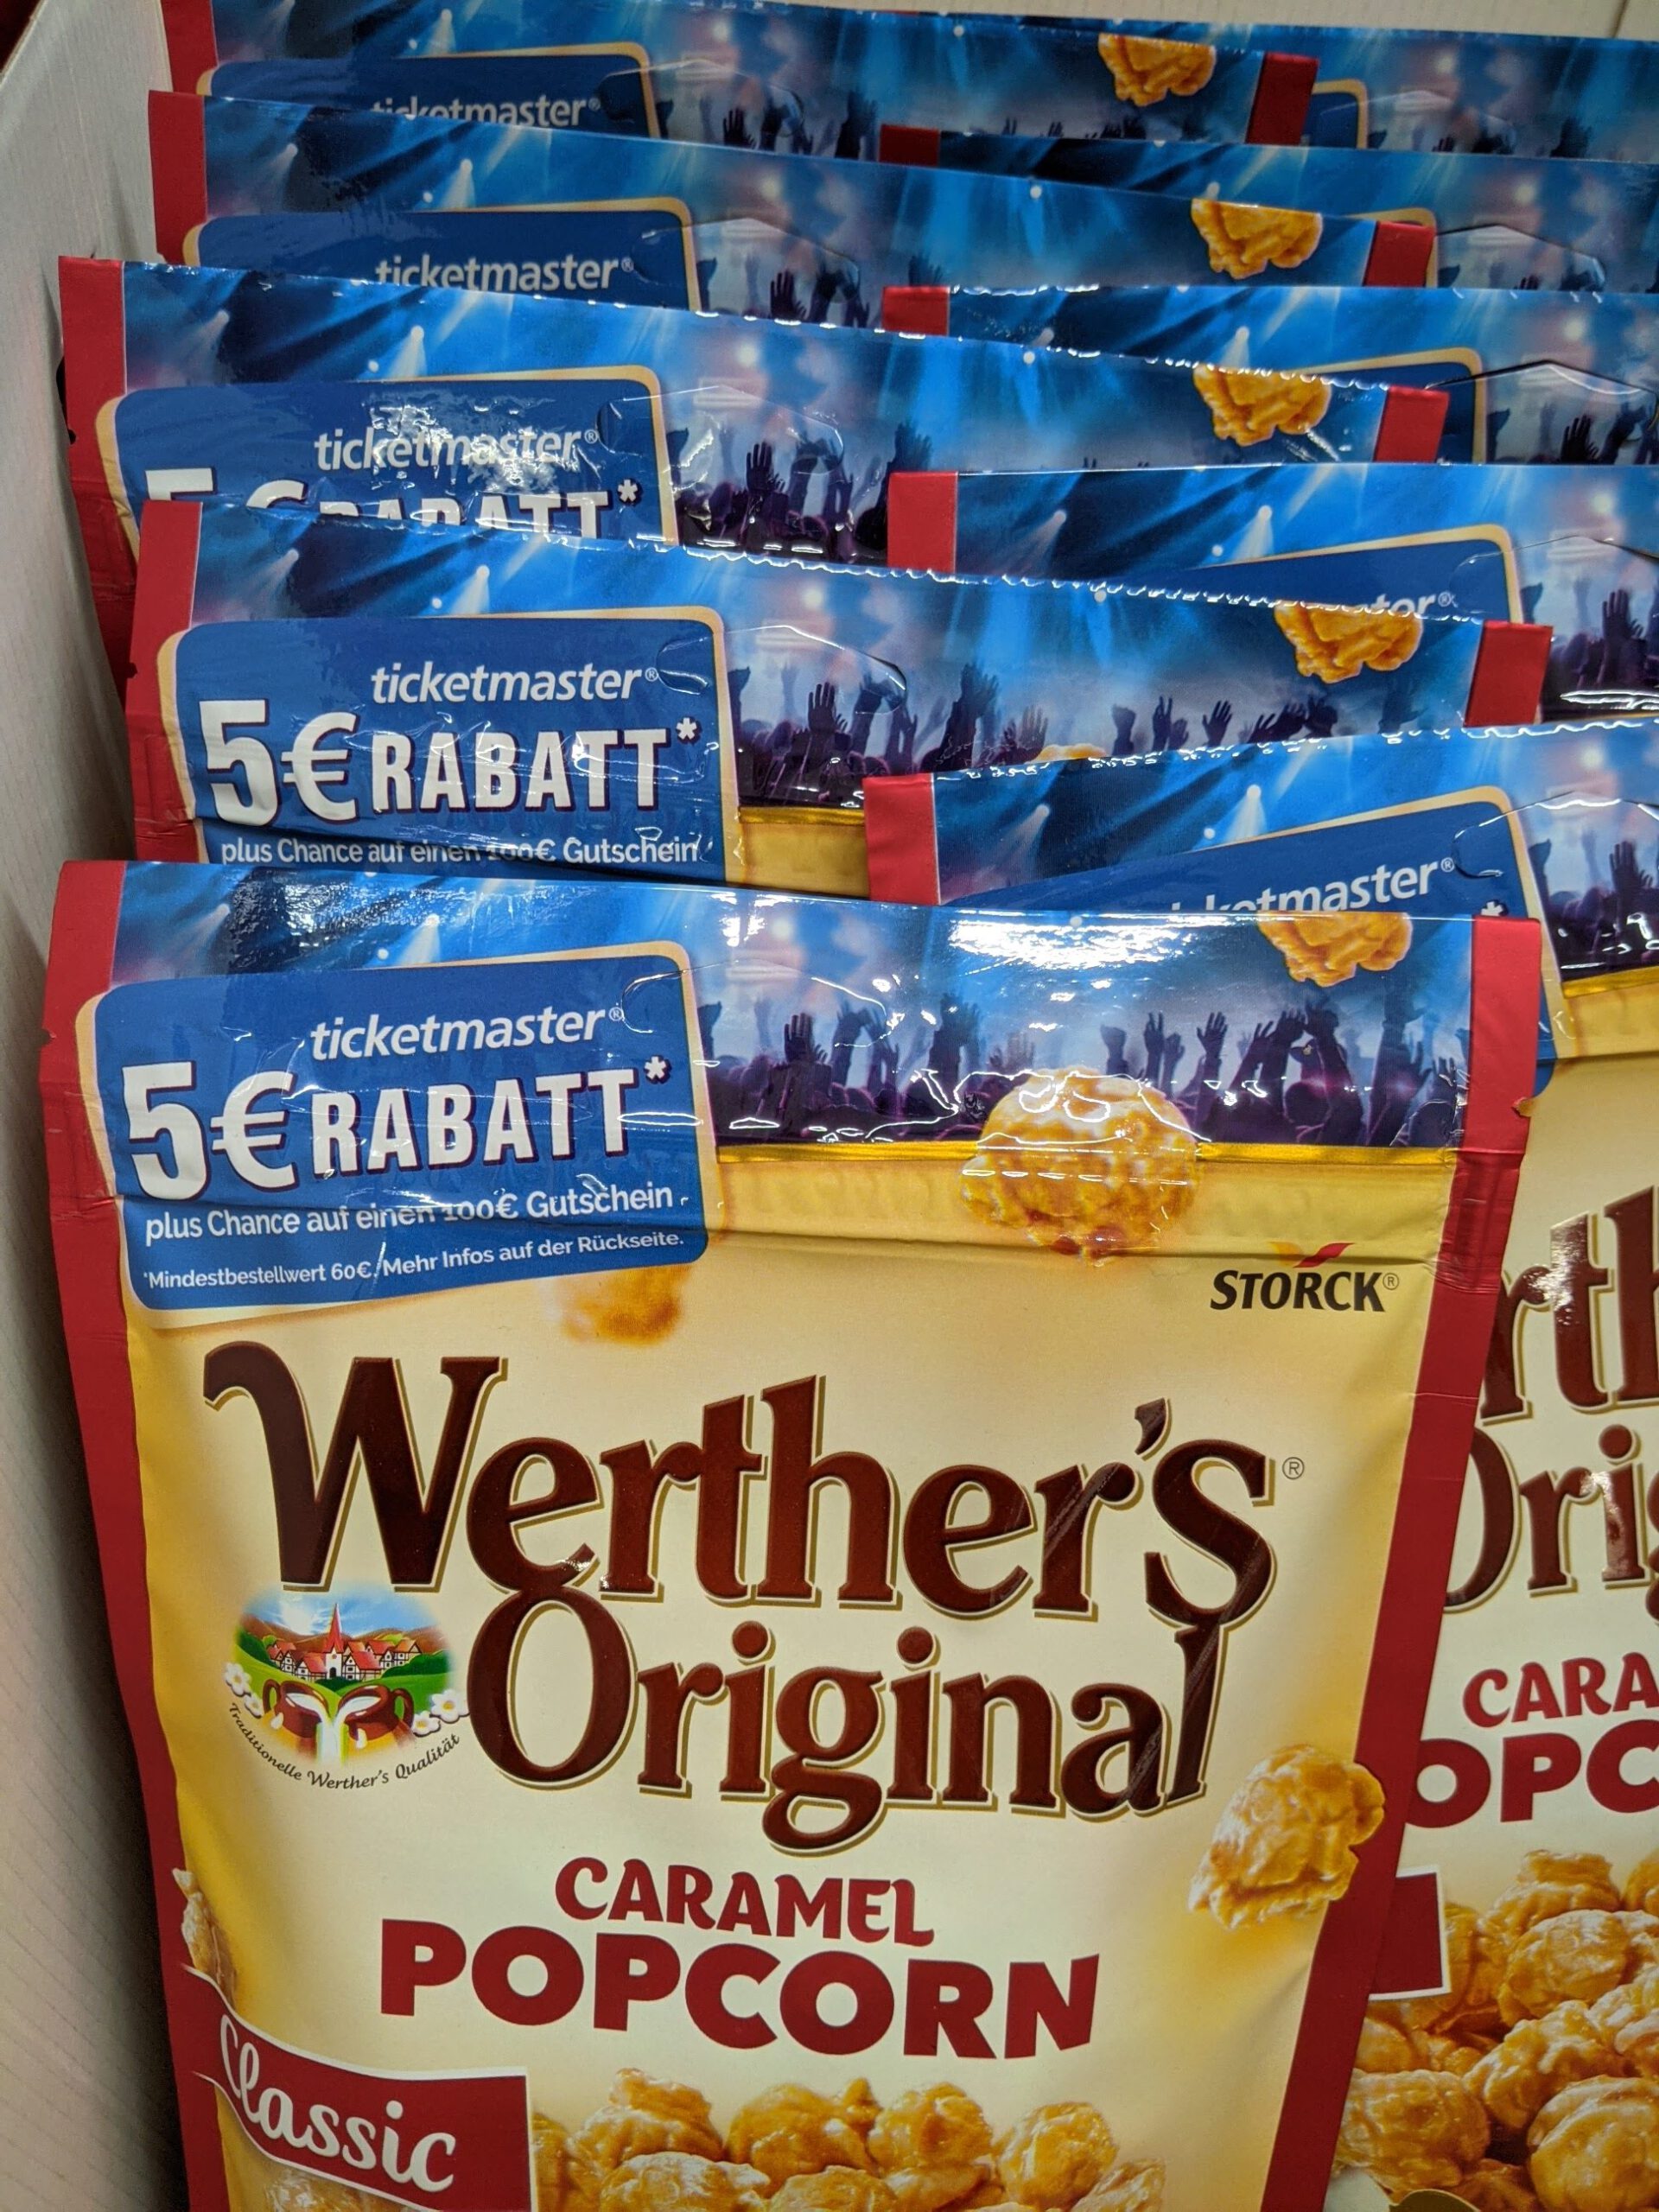 Werthers Original Caramel Popcorn: 5-Euro-Rabatt für Ticketmaster